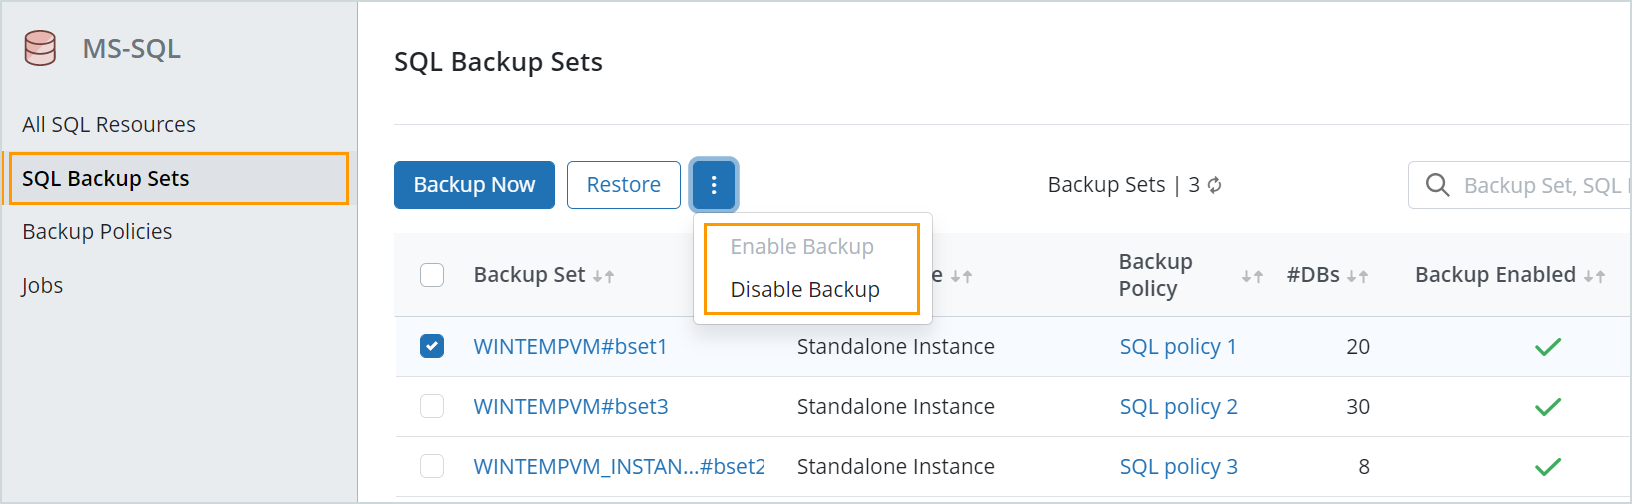 SQL Backup sets - Enable Disable backup.png